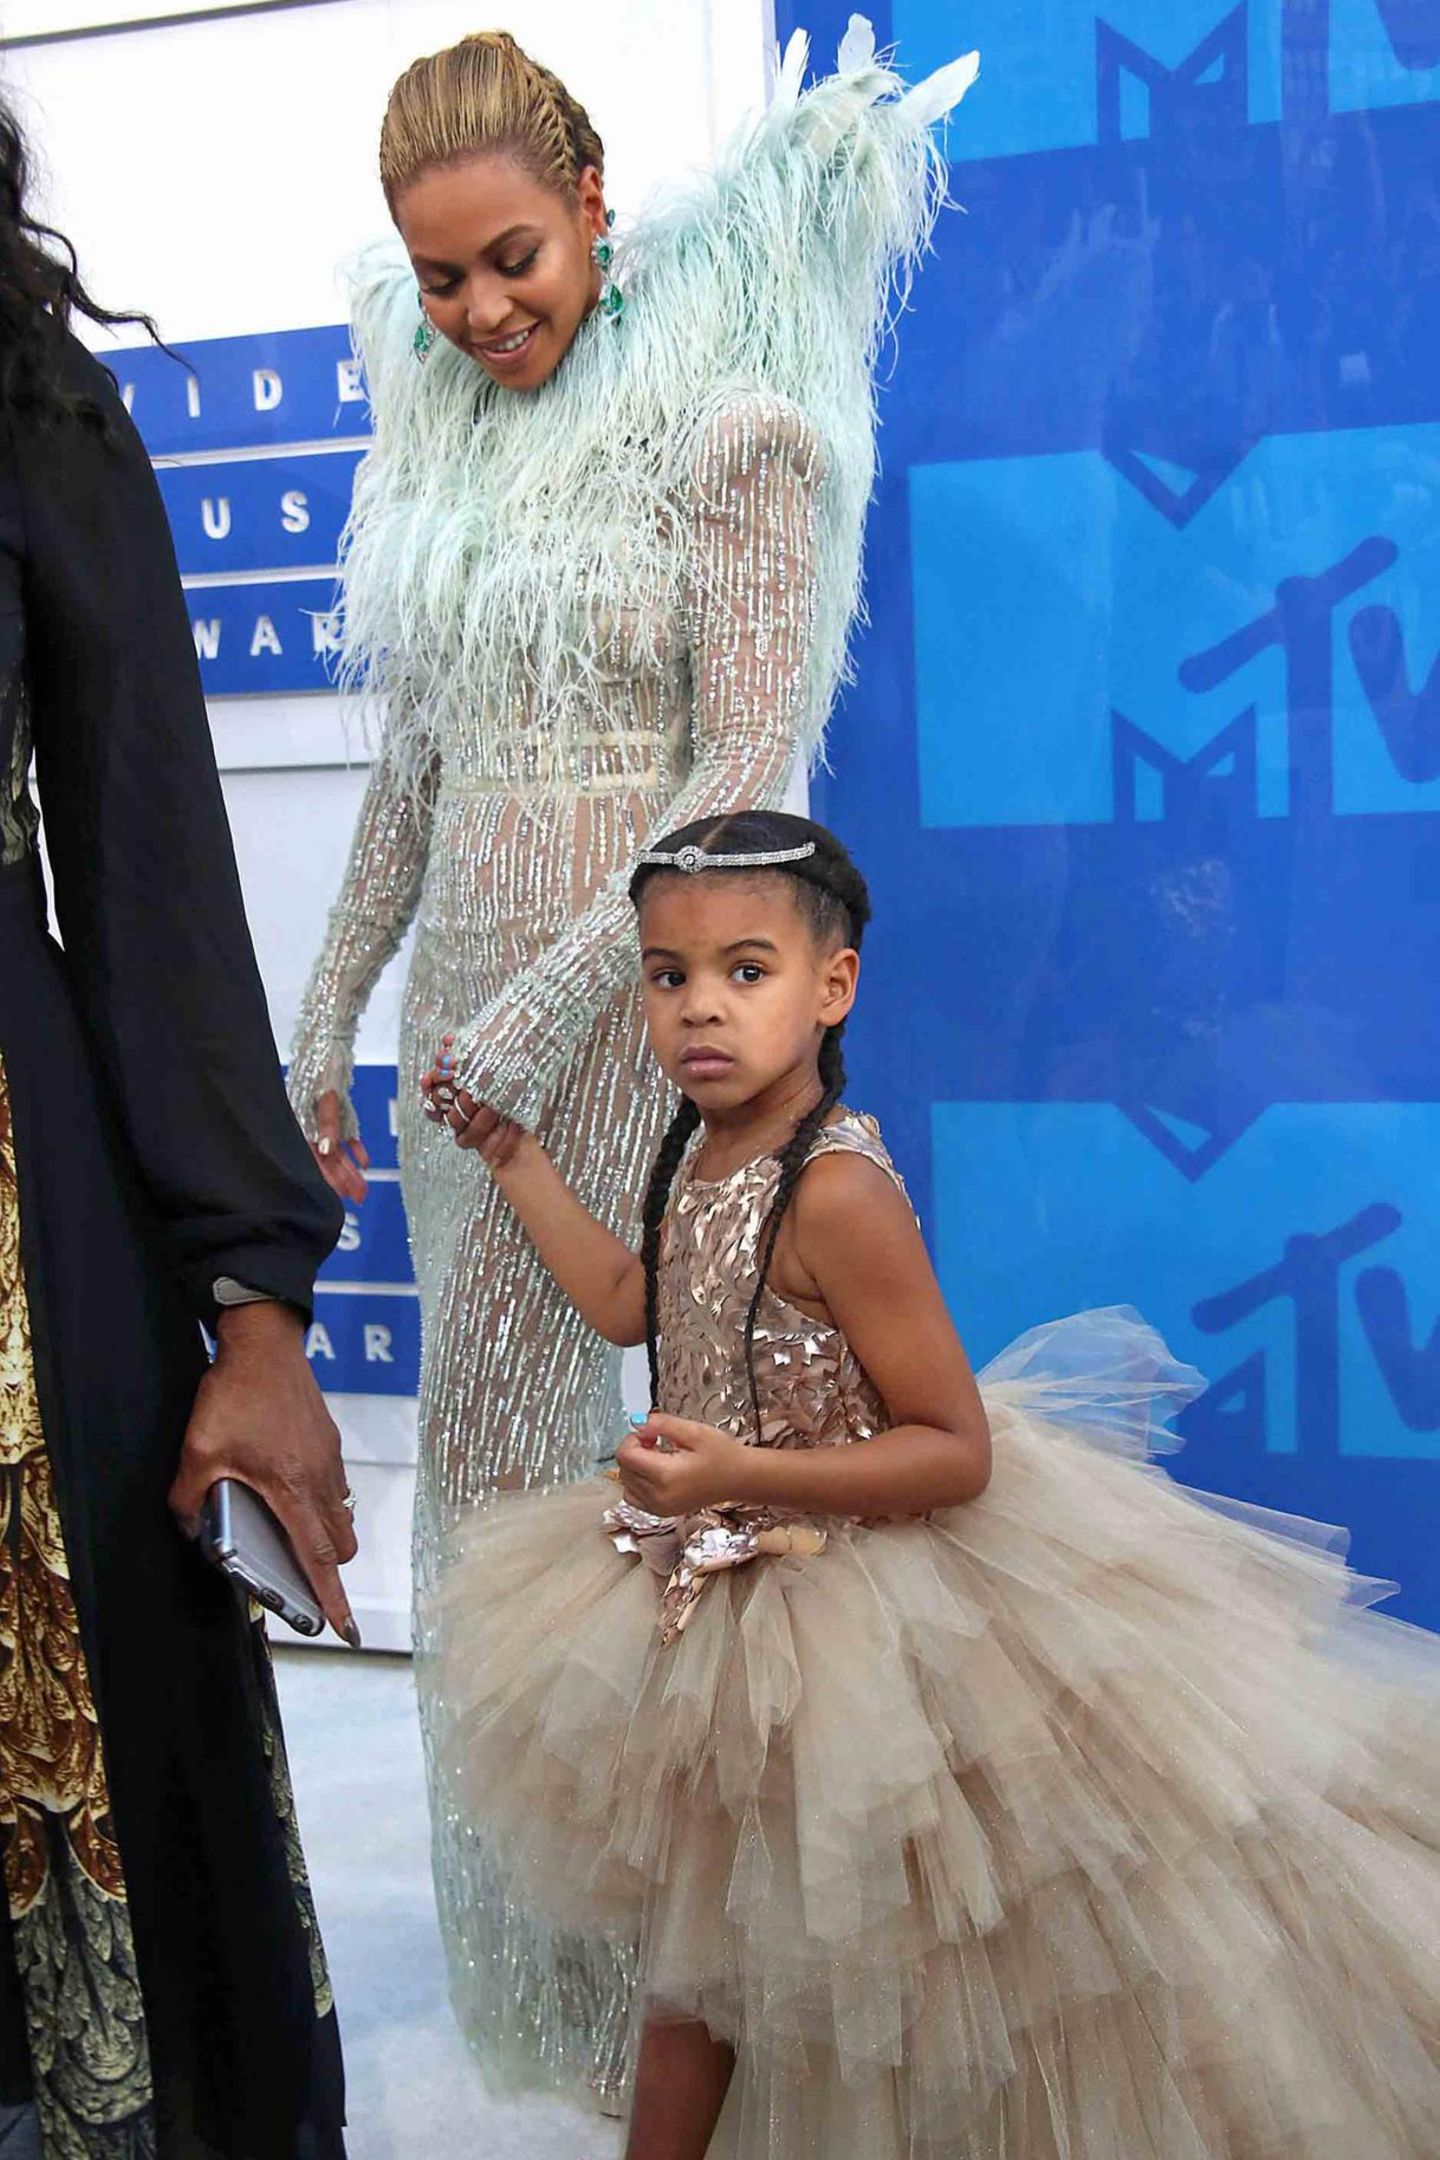 Blue Ivy ist der Mini von Beyoncé und Jay Z und darf mit zu den MTV Video Music Awards 2016 im Madison Square Garden New York. Für diesen Anlass hat Blue Ivy zwei französische Zöpfe geflochten bekommen und ihr Haupt ziert ein Diadem.